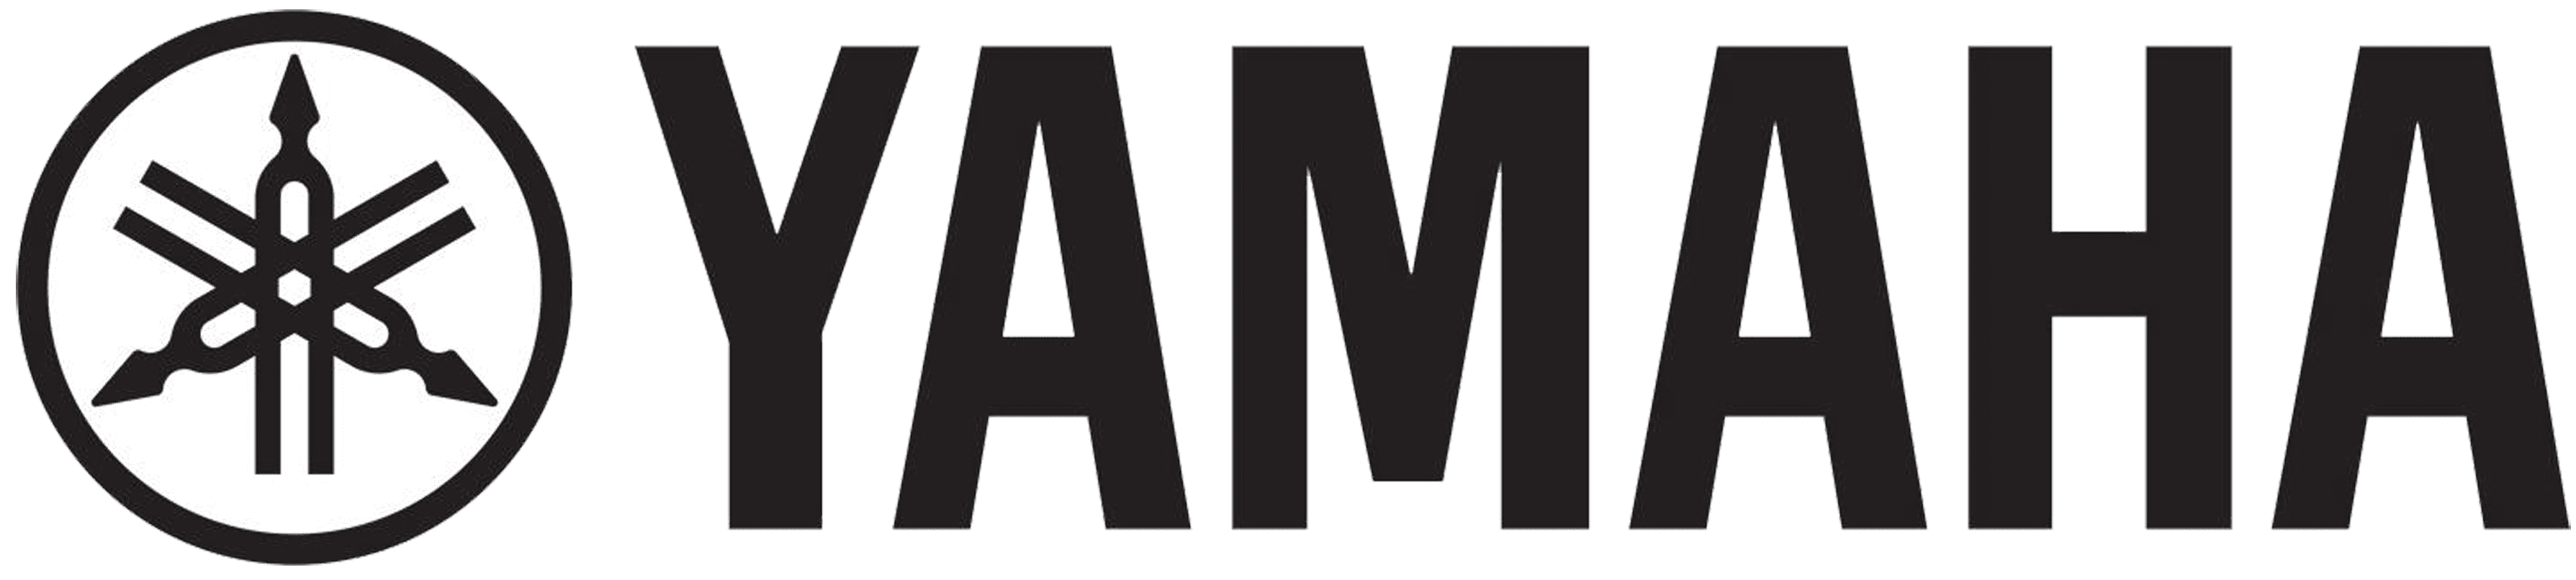 Yamaha brand logo